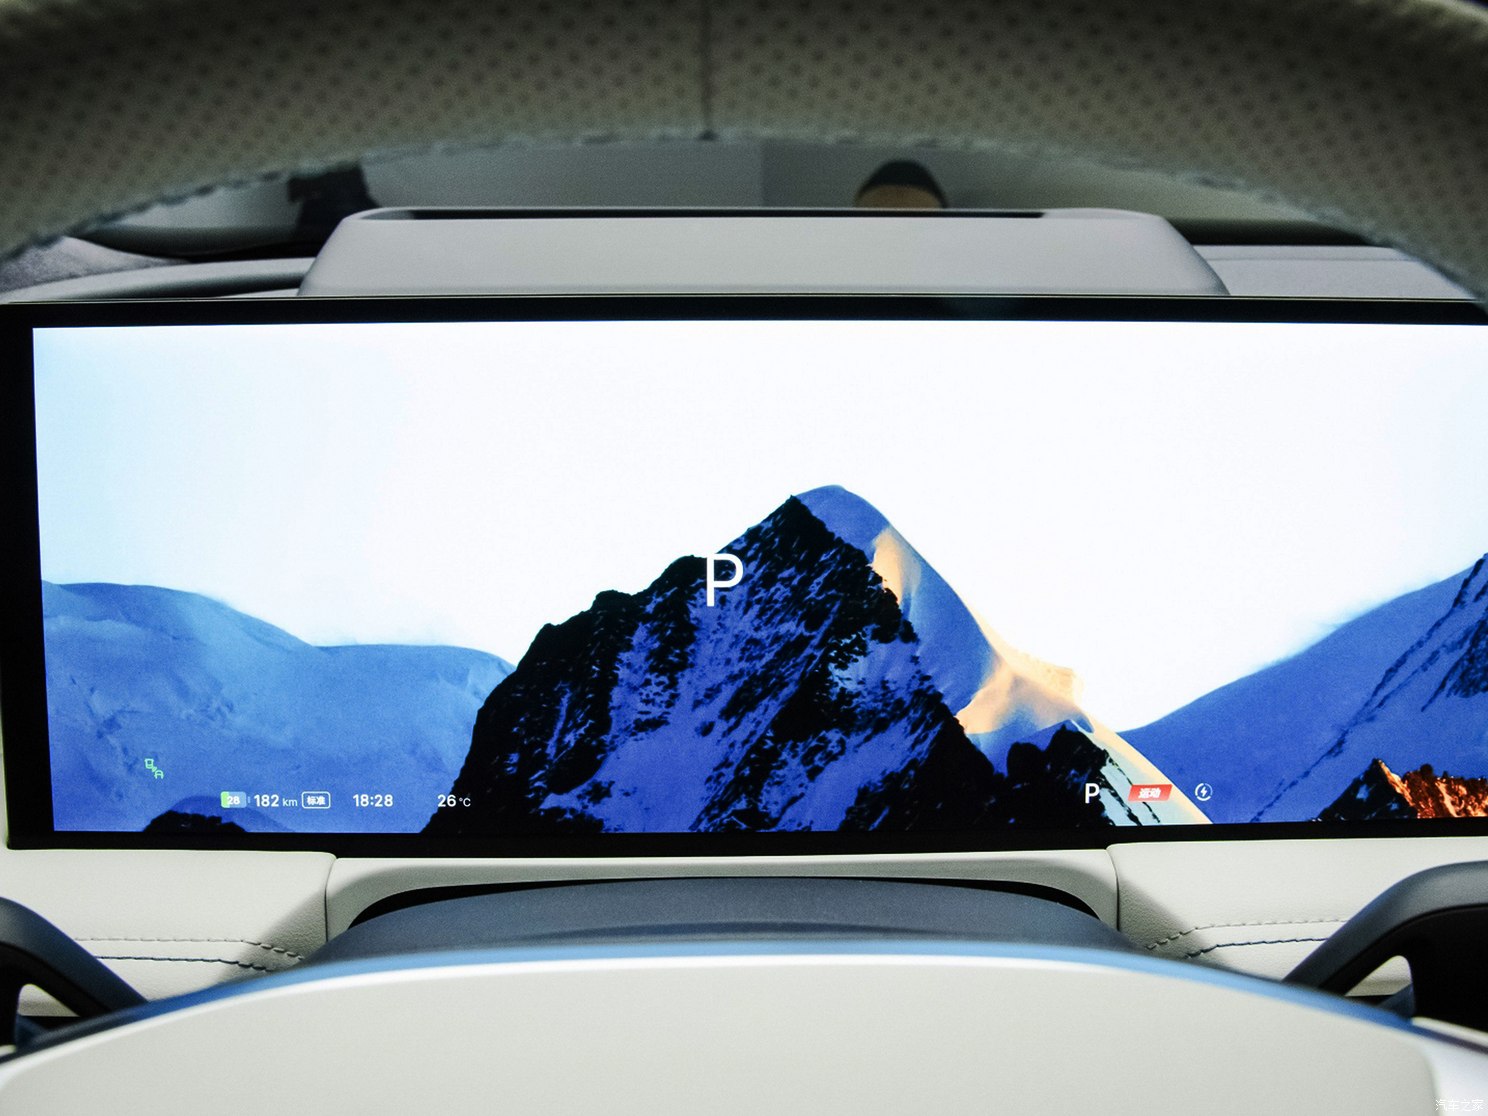 Geely запустила предзаказы на новый бизнес-седан Galaxy E8 с 45-дюймовым экраном